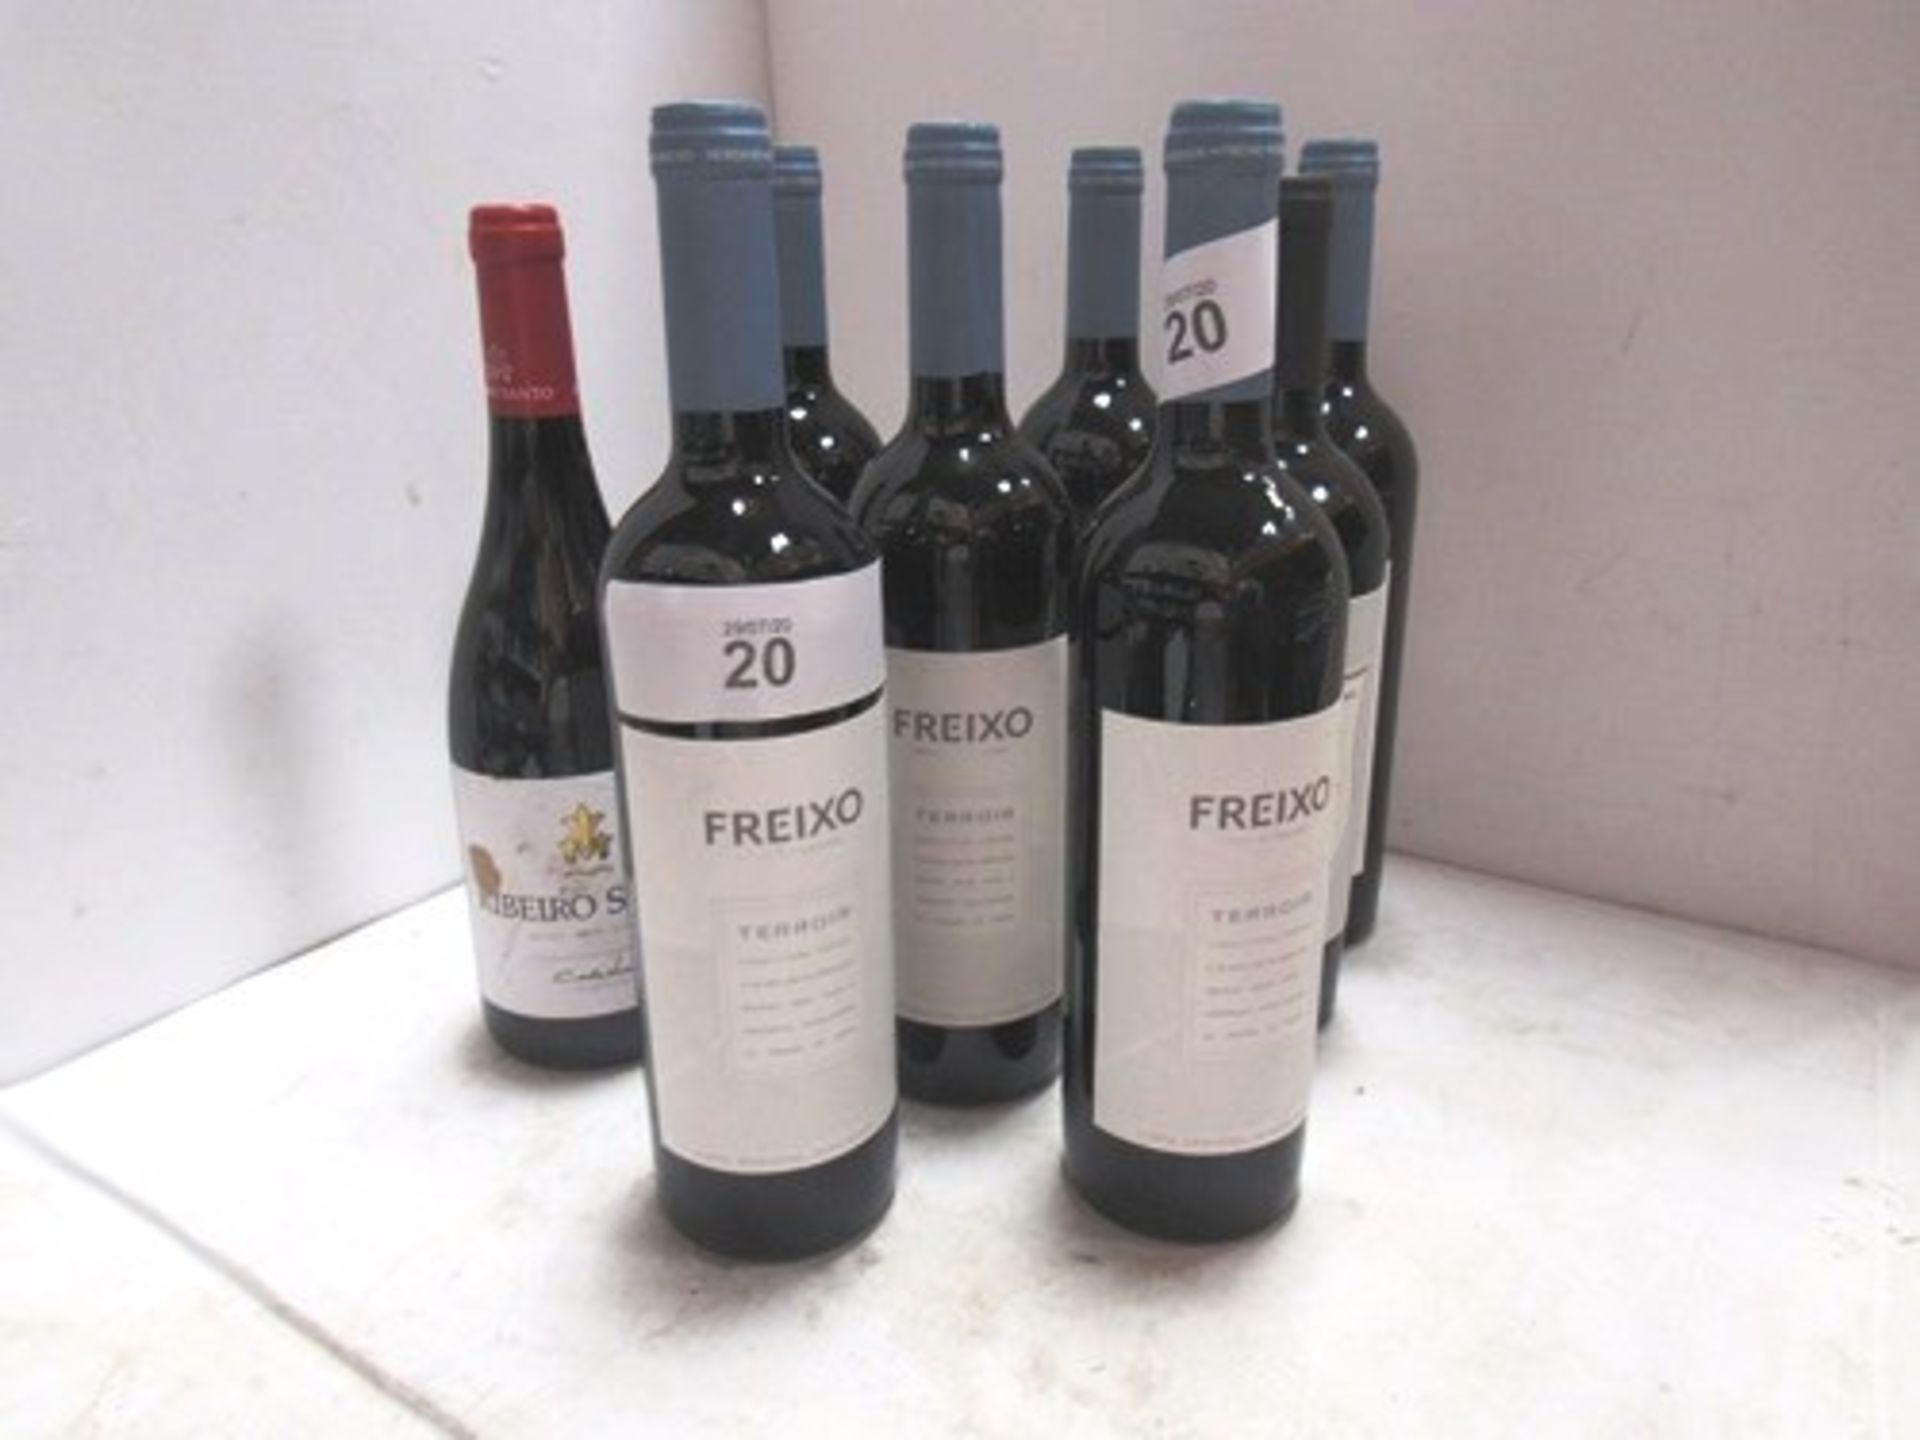 8 x assorted bottles of Portuguese wine including 6 x 750ml bottles of Herdade Do Freixo Terroir